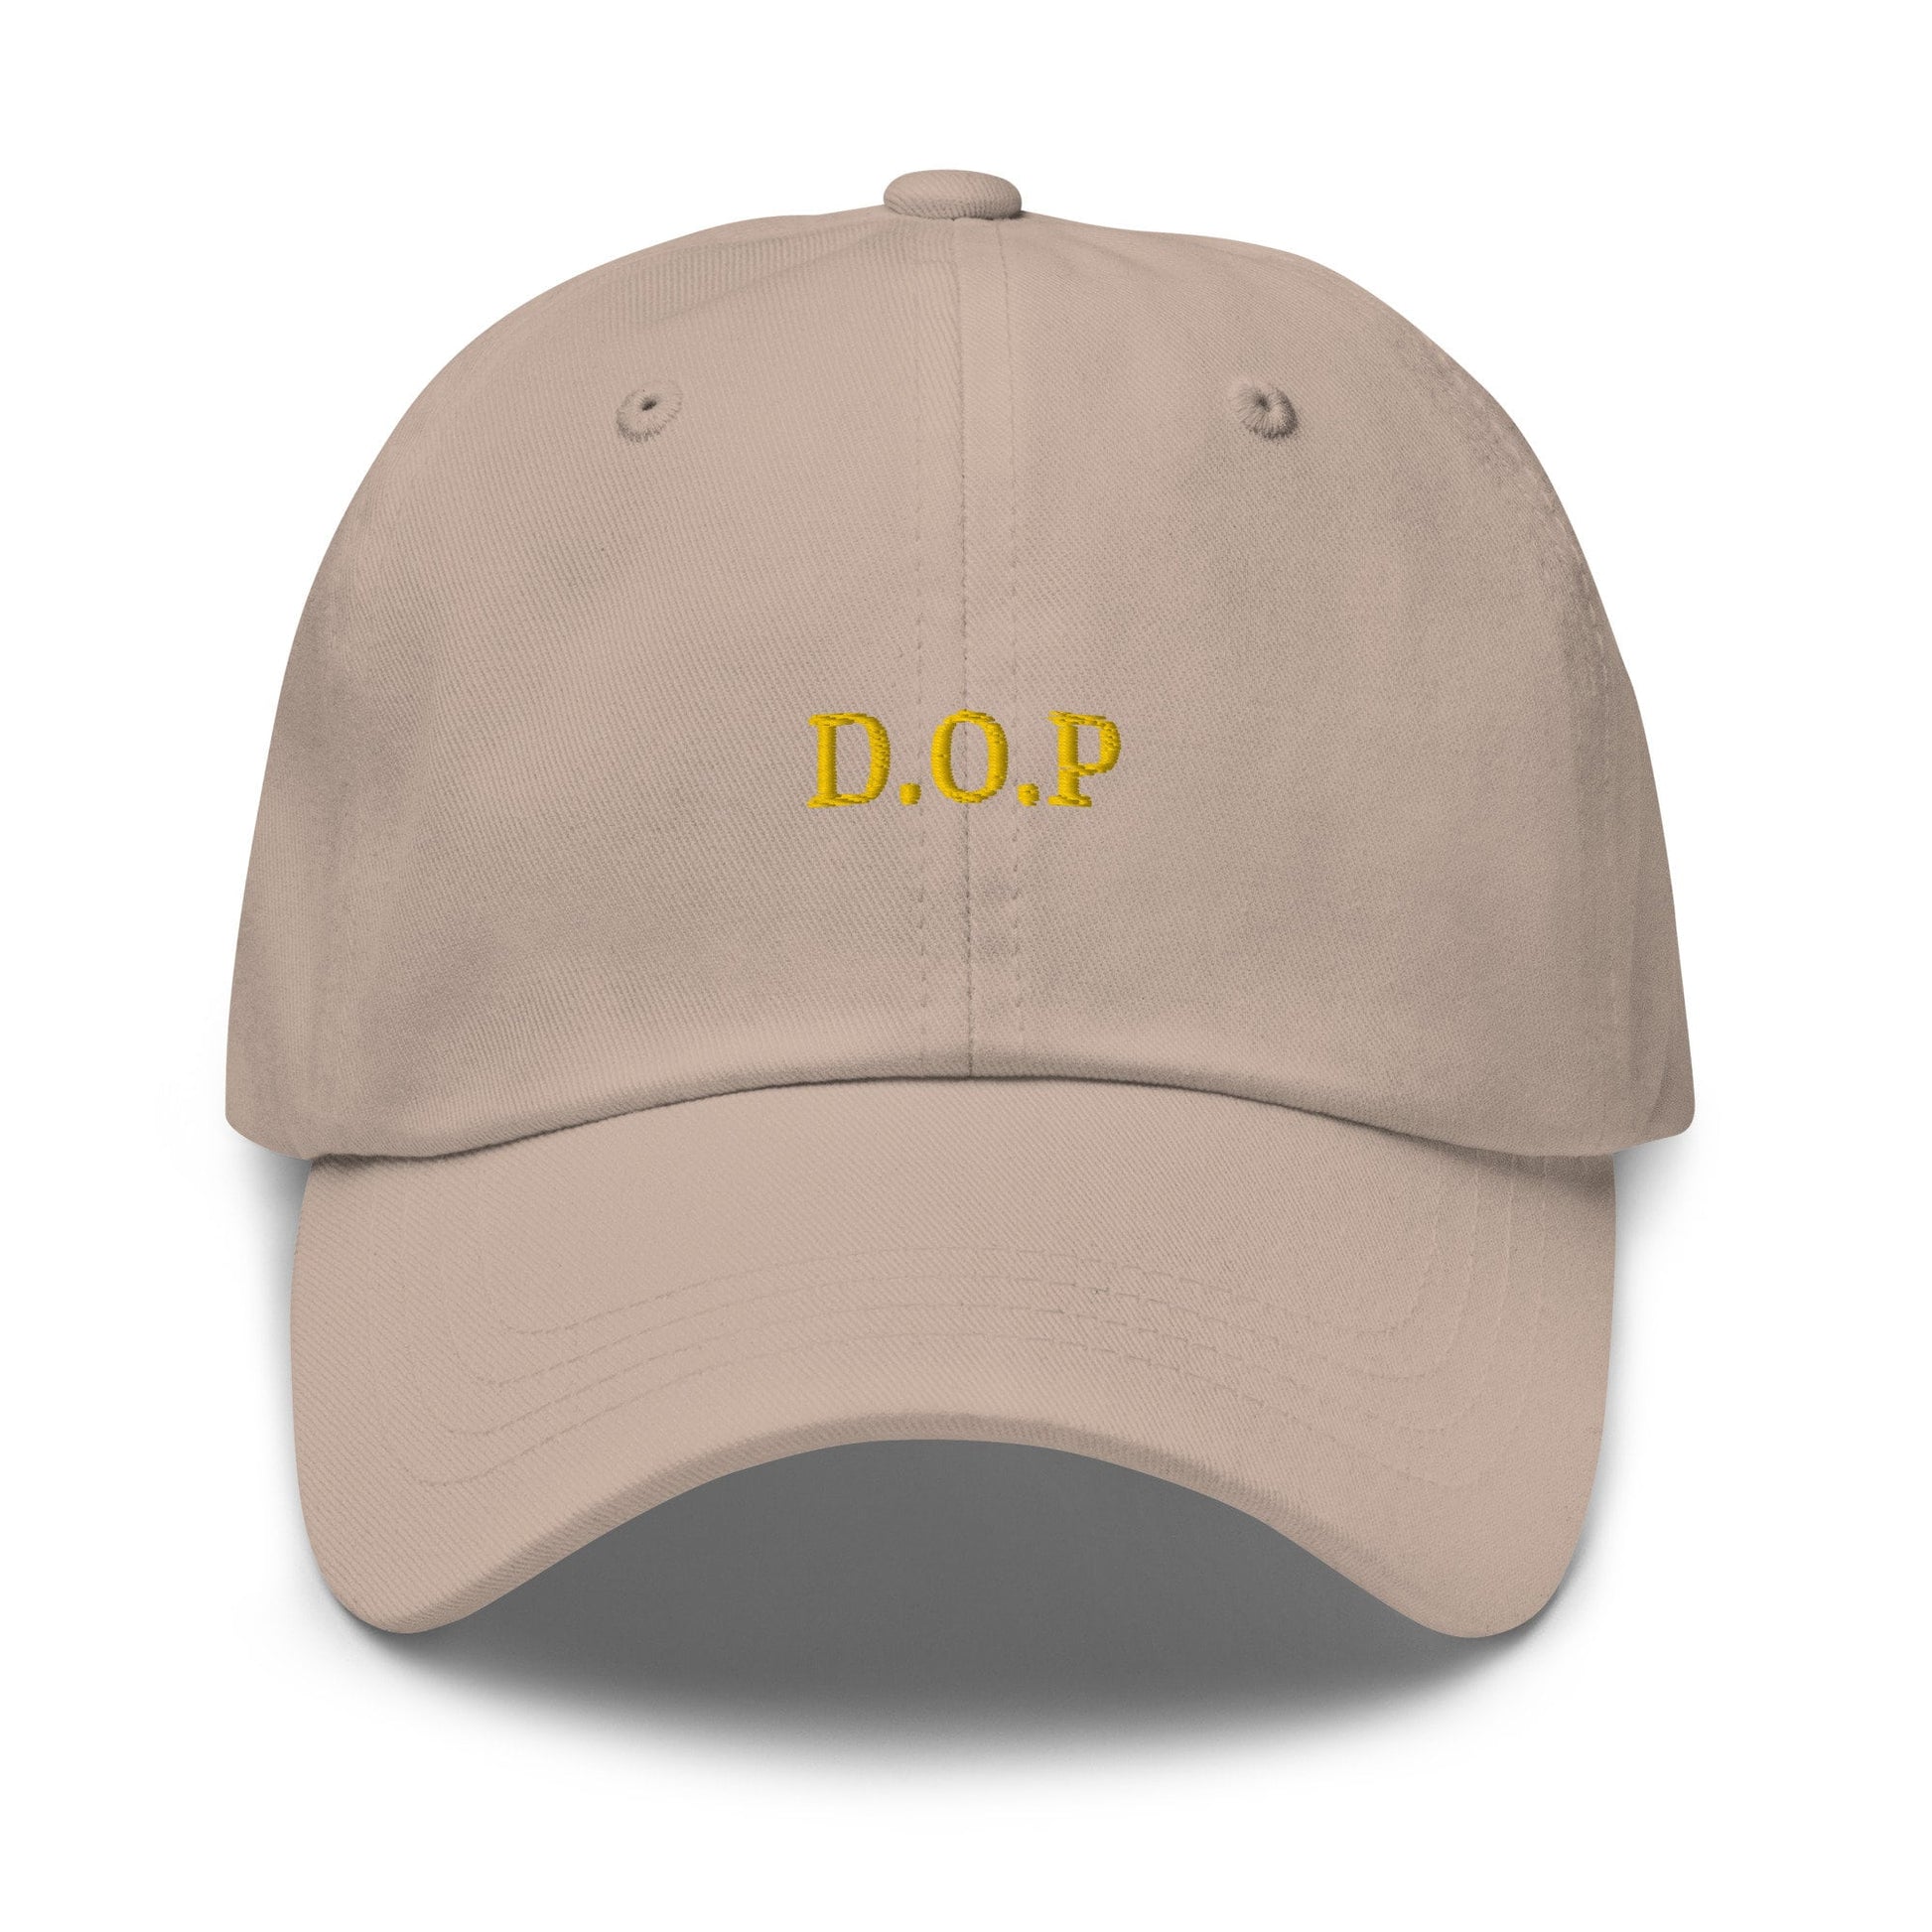 DOP Hat - Authentic Italian Food Fan gift - Denominazione di Origine Protetta - Cotton embroidered Cap